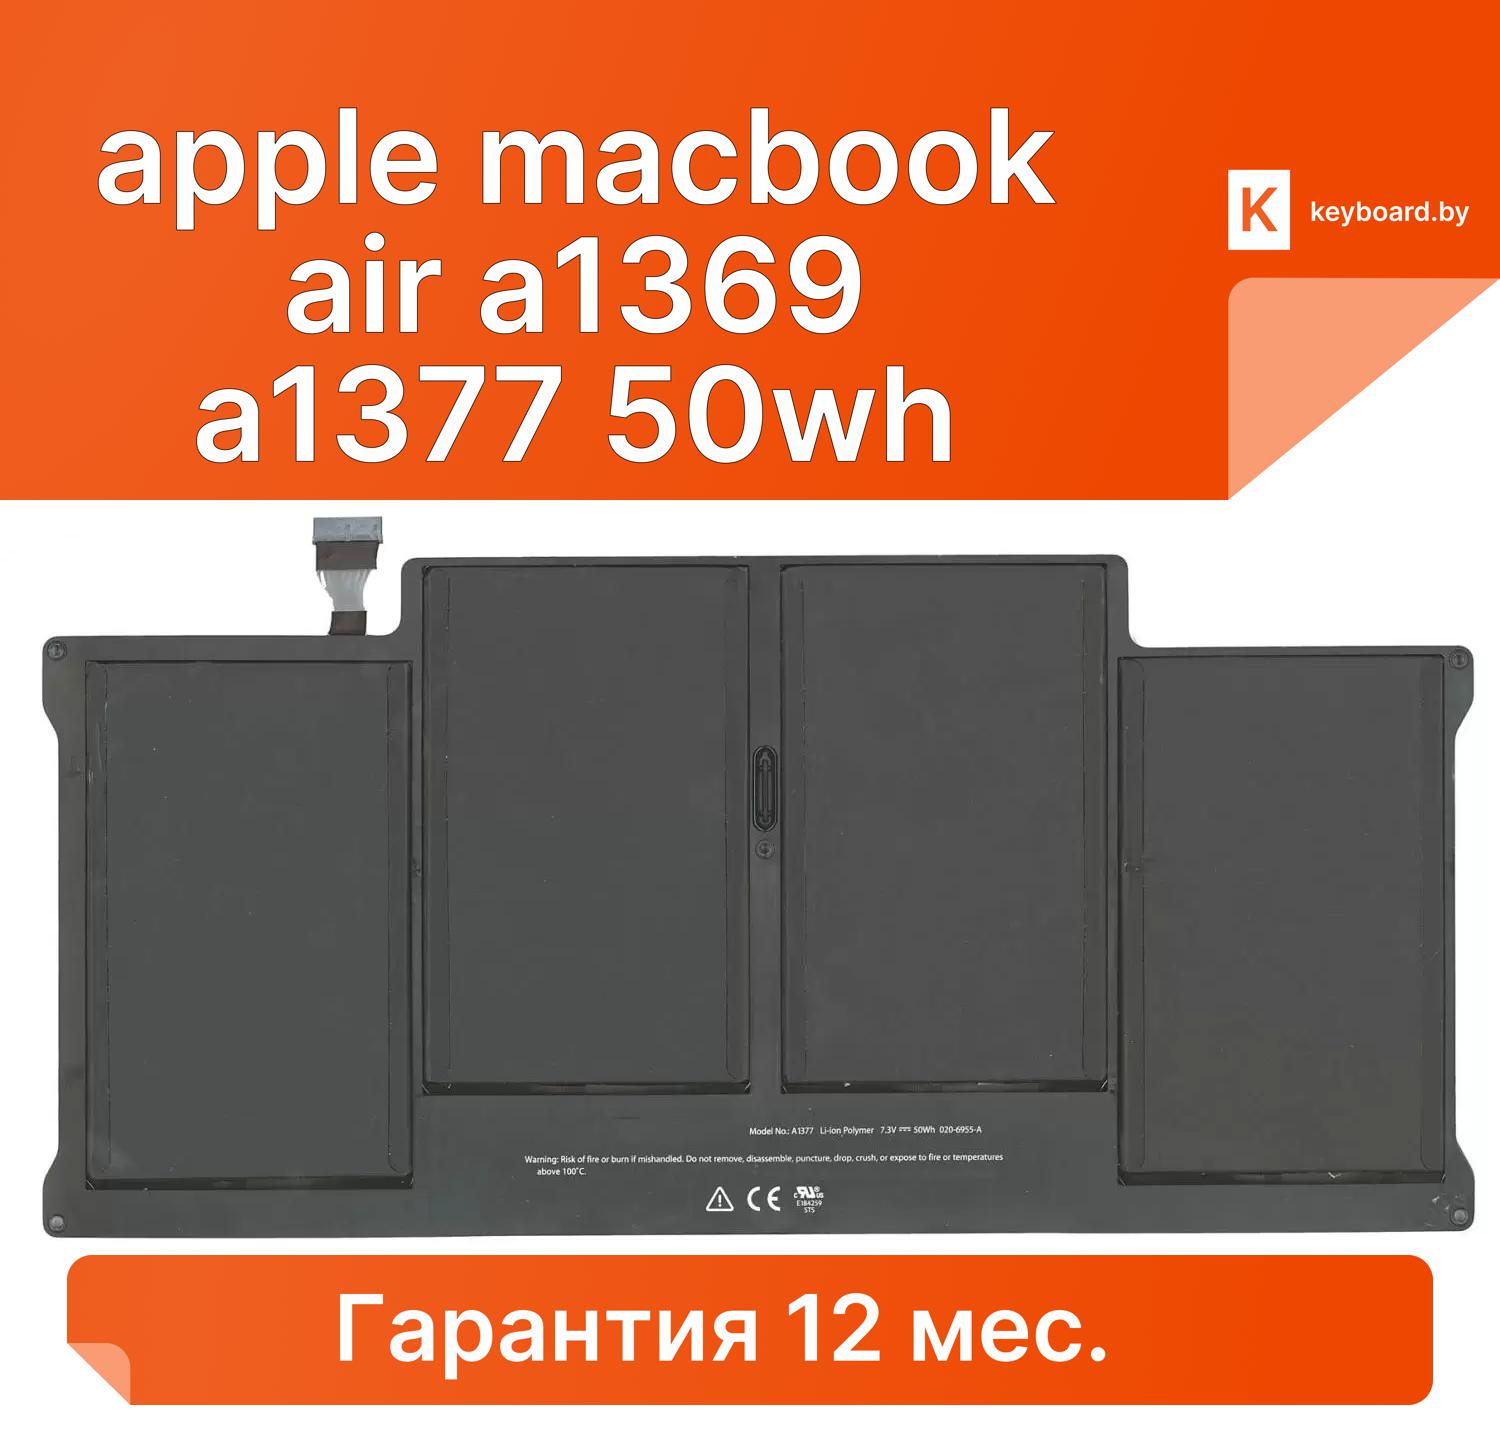 Аккумуляторная батарея для ноутбука apple macbook air a1369 a1377 50wh